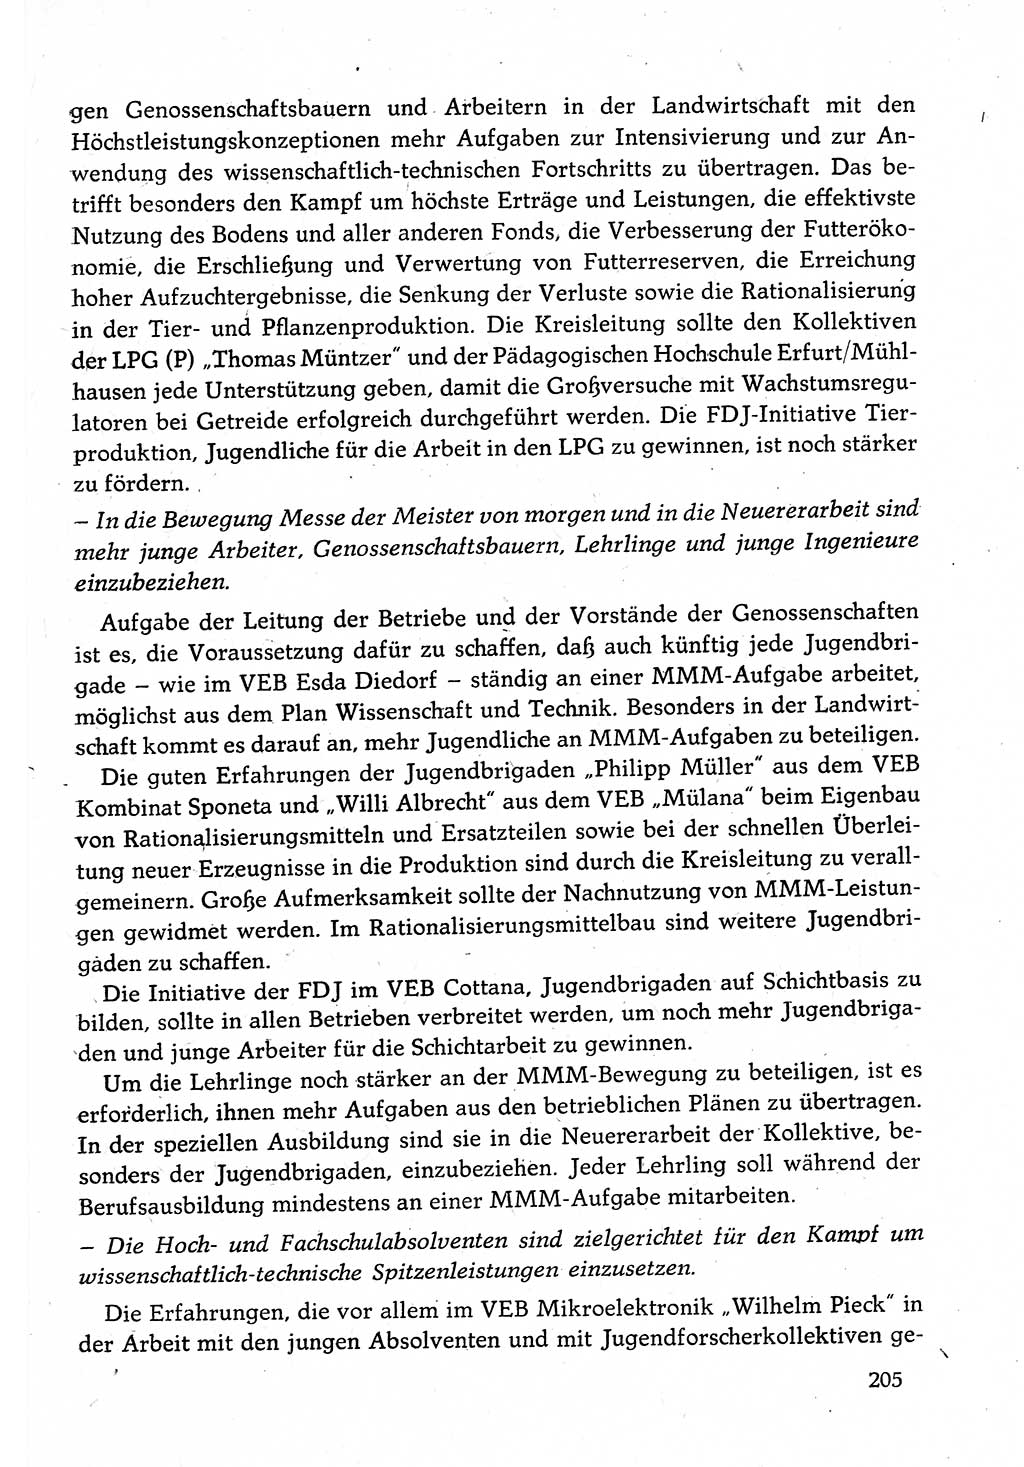 Dokumente der Sozialistischen Einheitspartei Deutschlands (SED) [Deutsche Demokratische Republik (DDR)] 1982-1983, Seite 205 (Dok. SED DDR 1982-1983, S. 205)